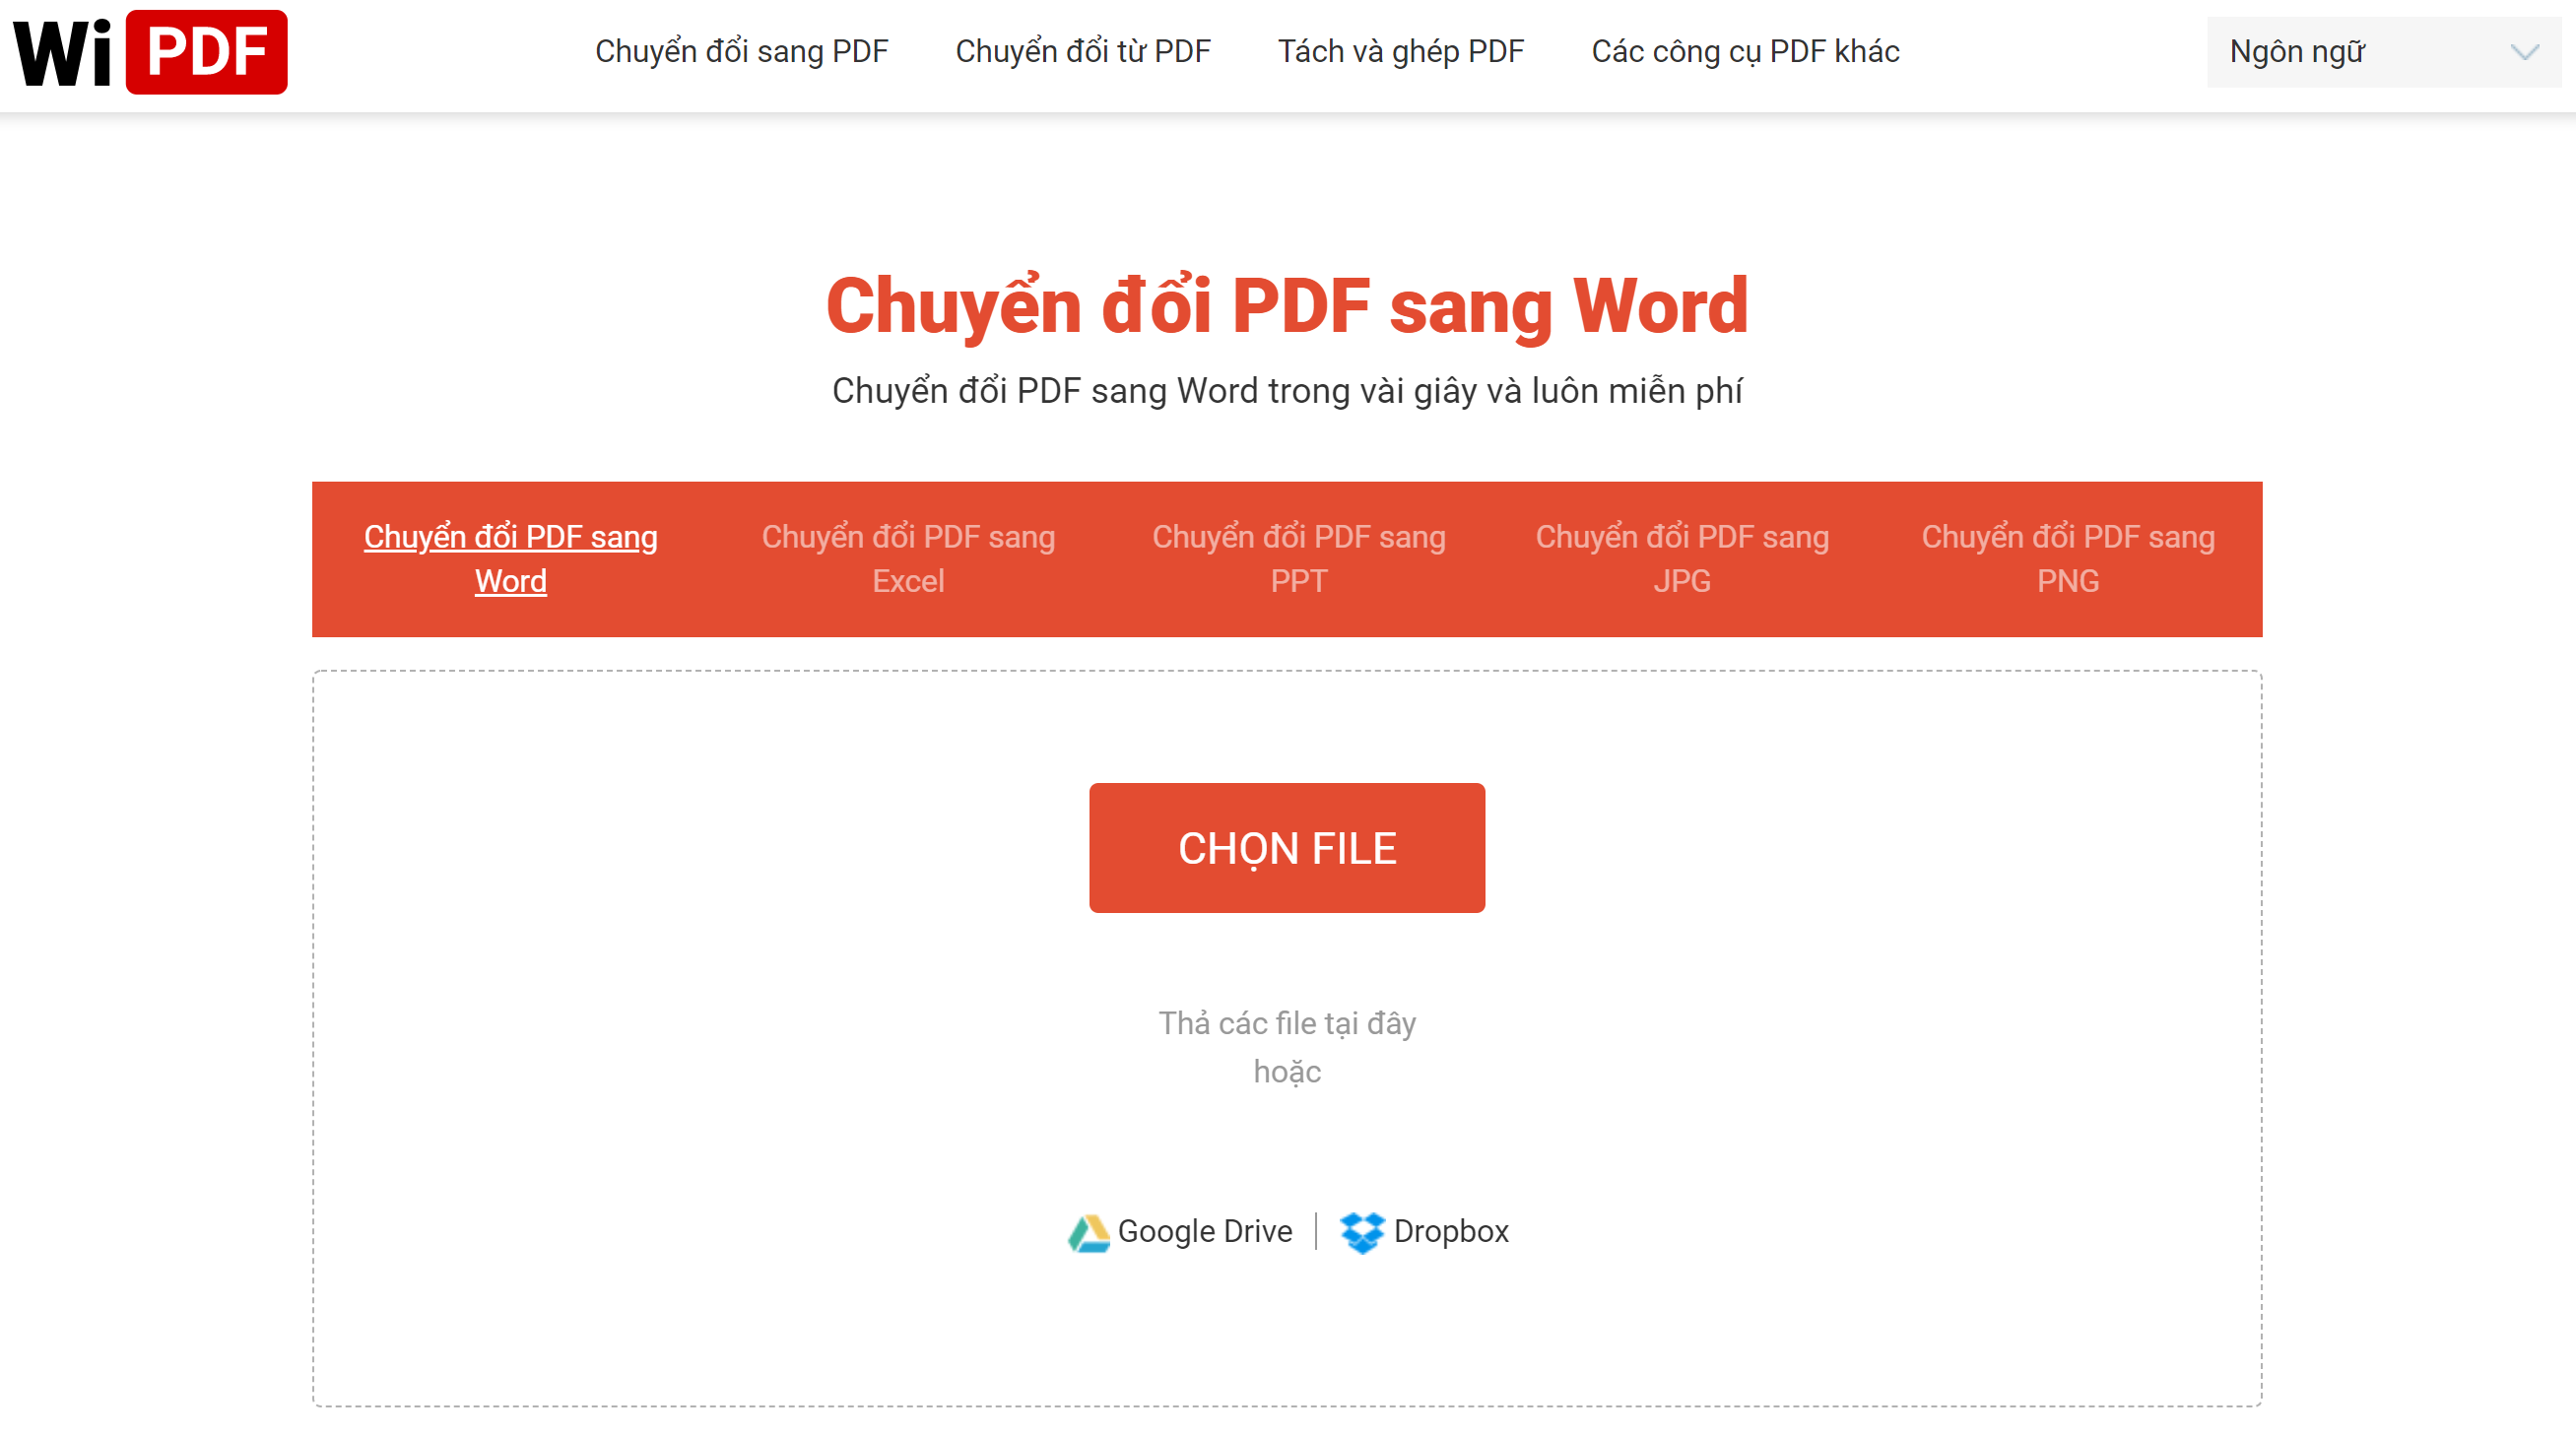 Chuyển đổi PDF sang Word